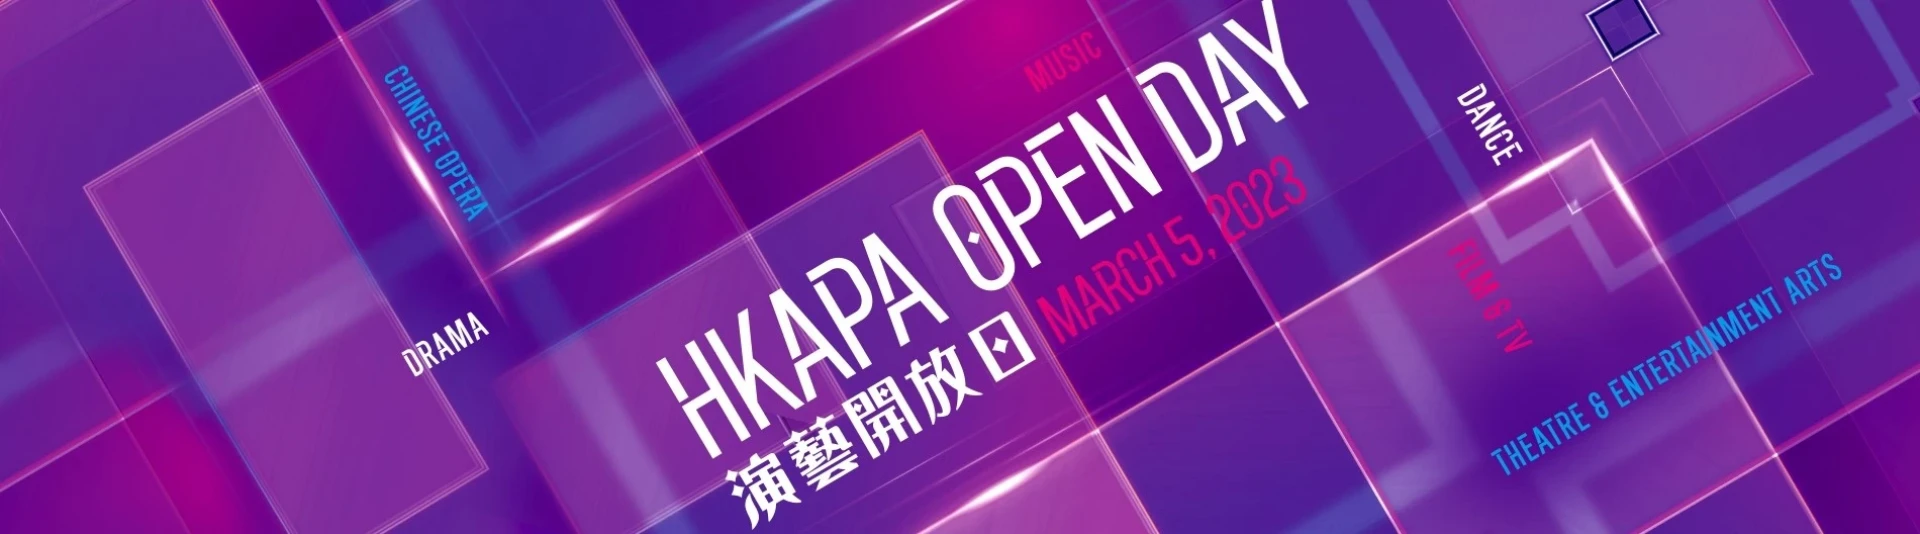 HKAPA Open Day on March 5